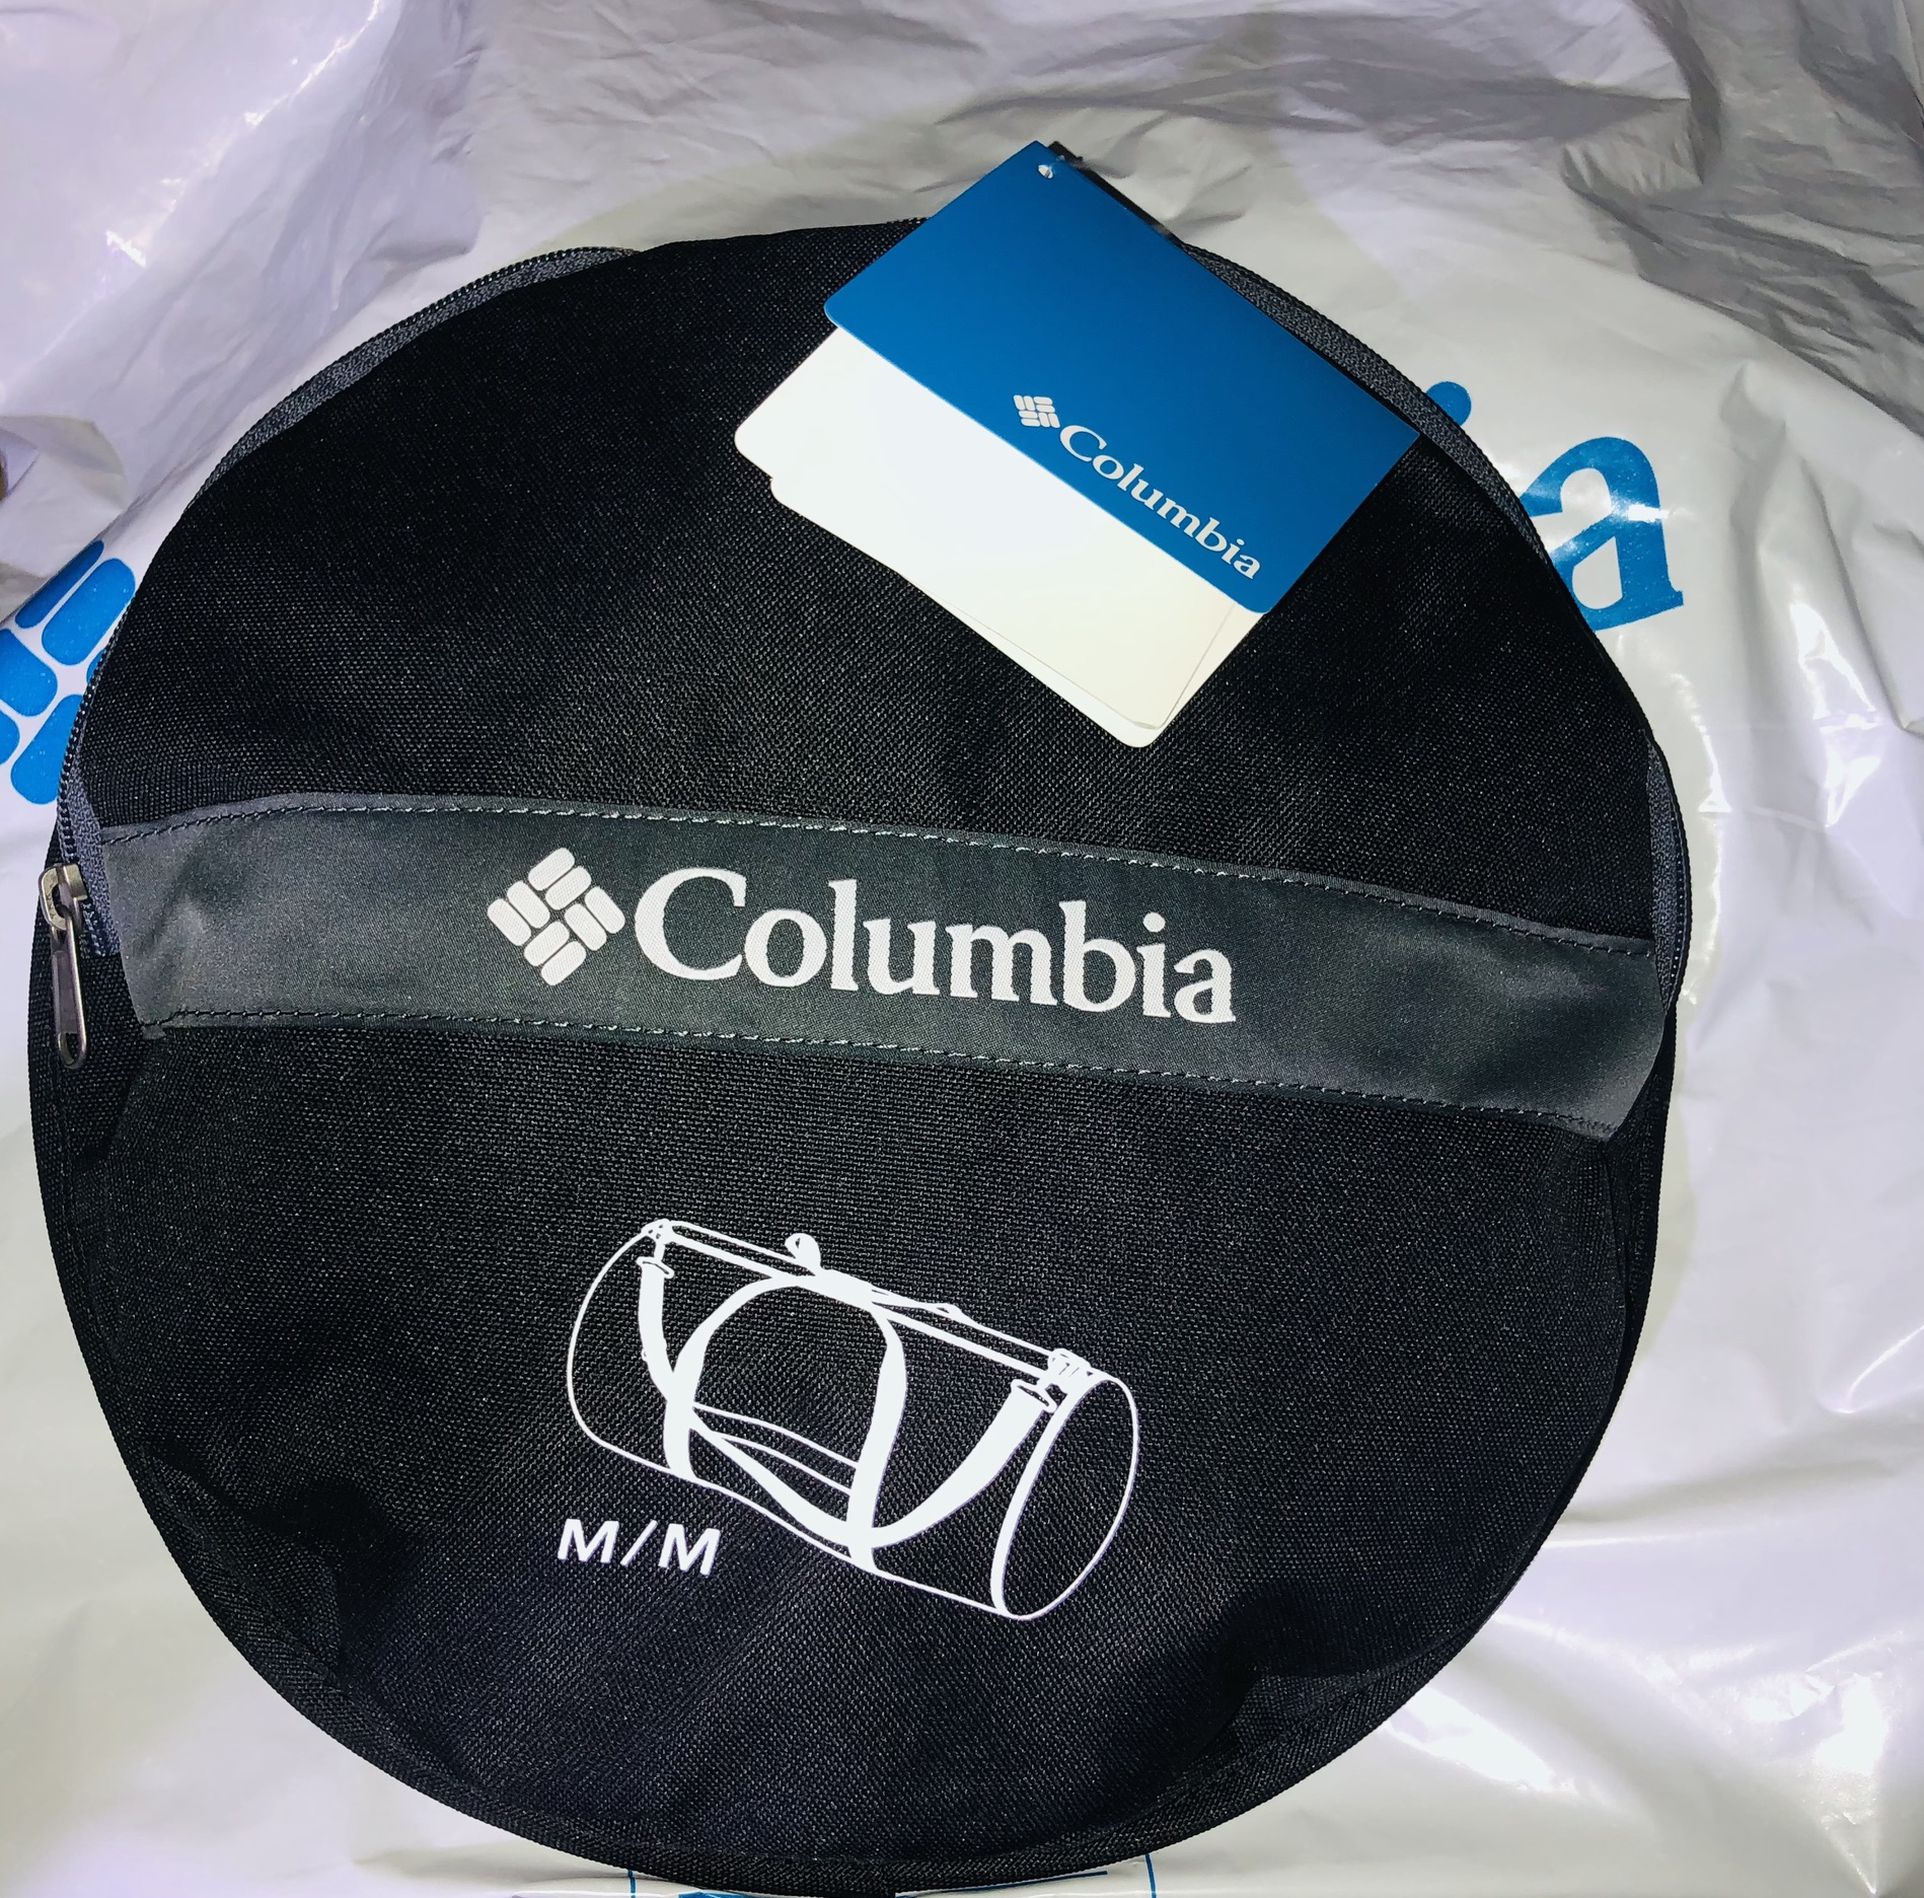 Columbia Duffel Bag